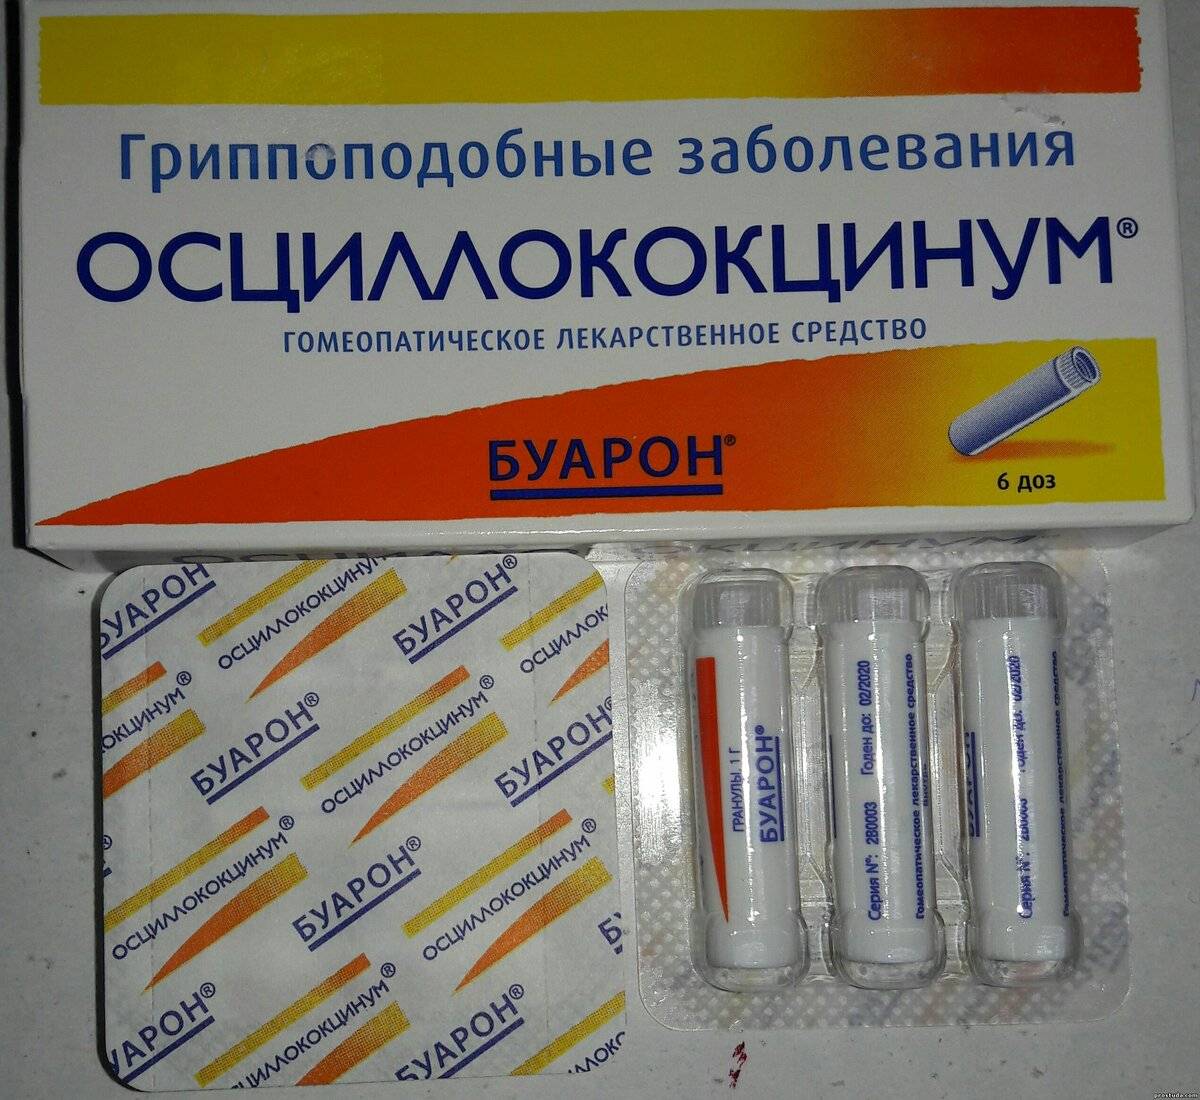 Оциллококцинум Спб